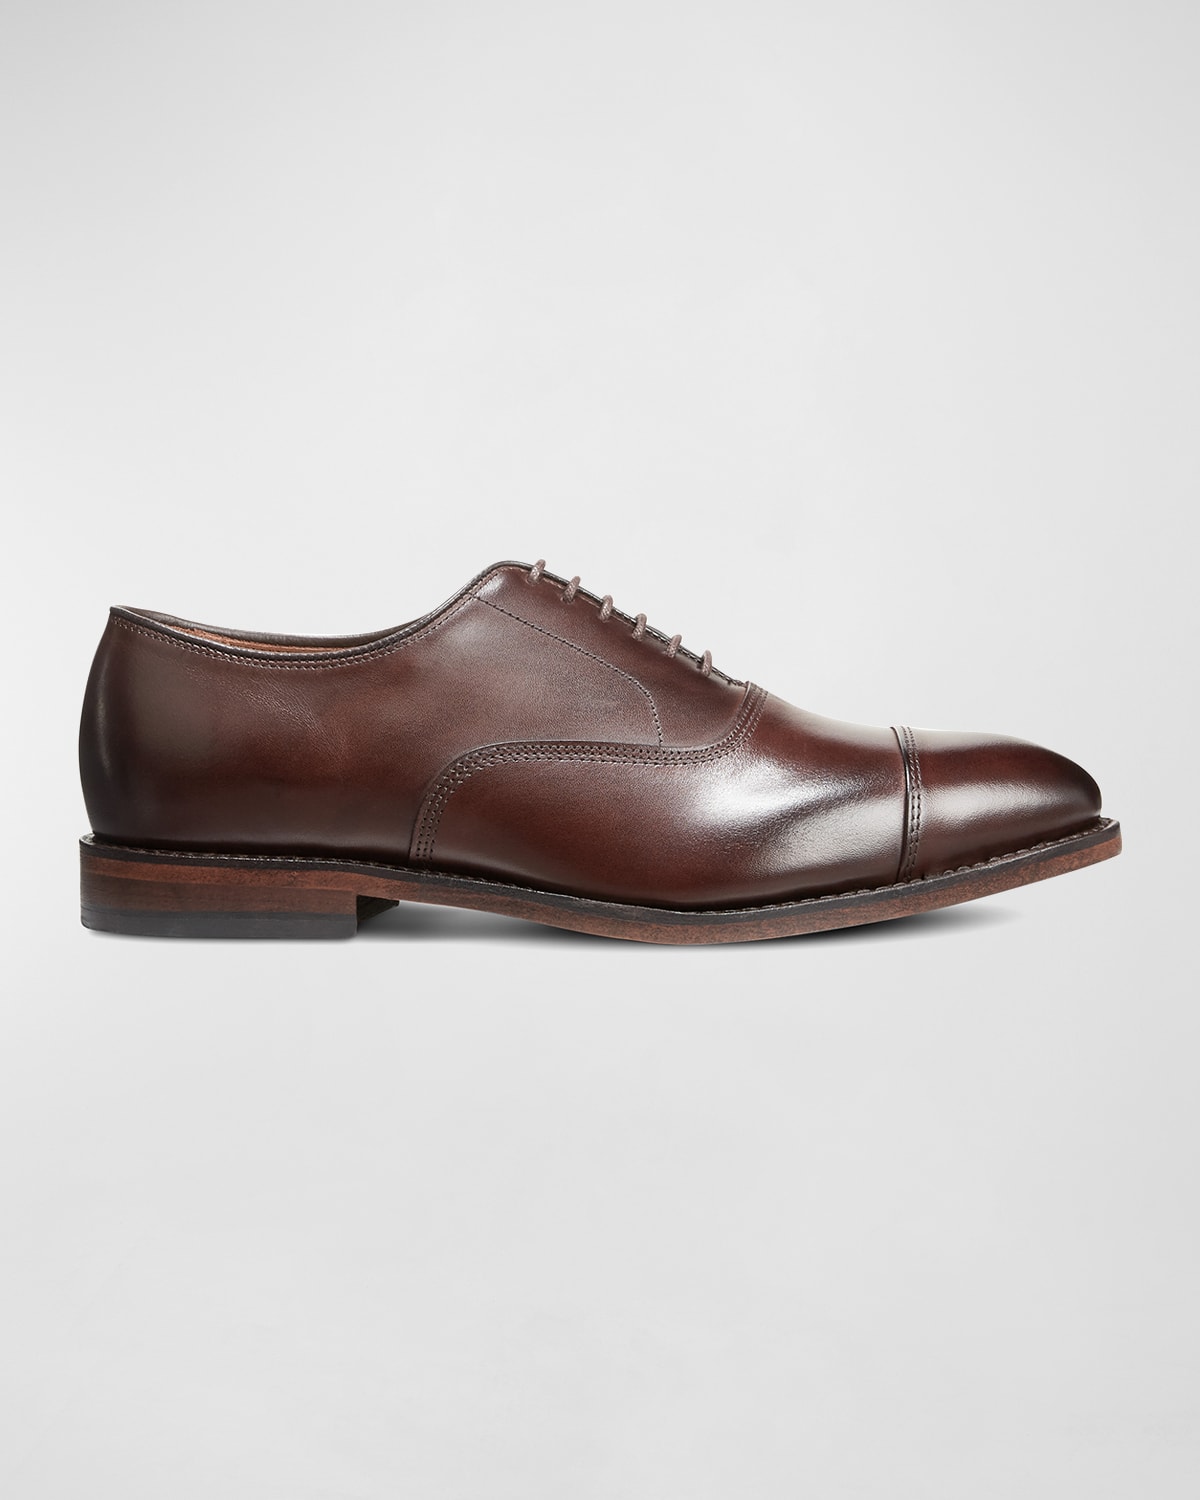 Allen Edmonds Men's Park Avenue Leather Oxford Shoes